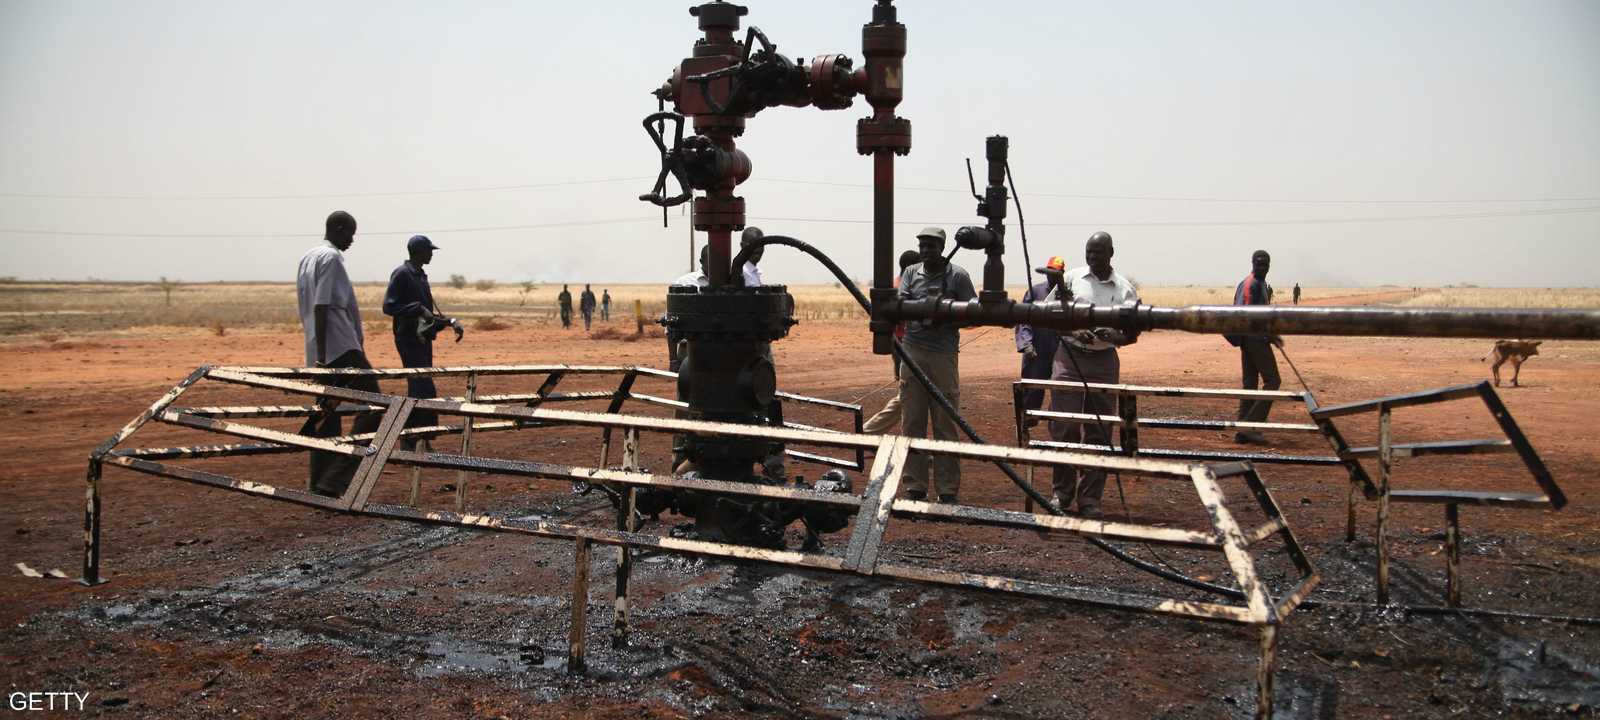 أنابيب لنقل النفط في السودان